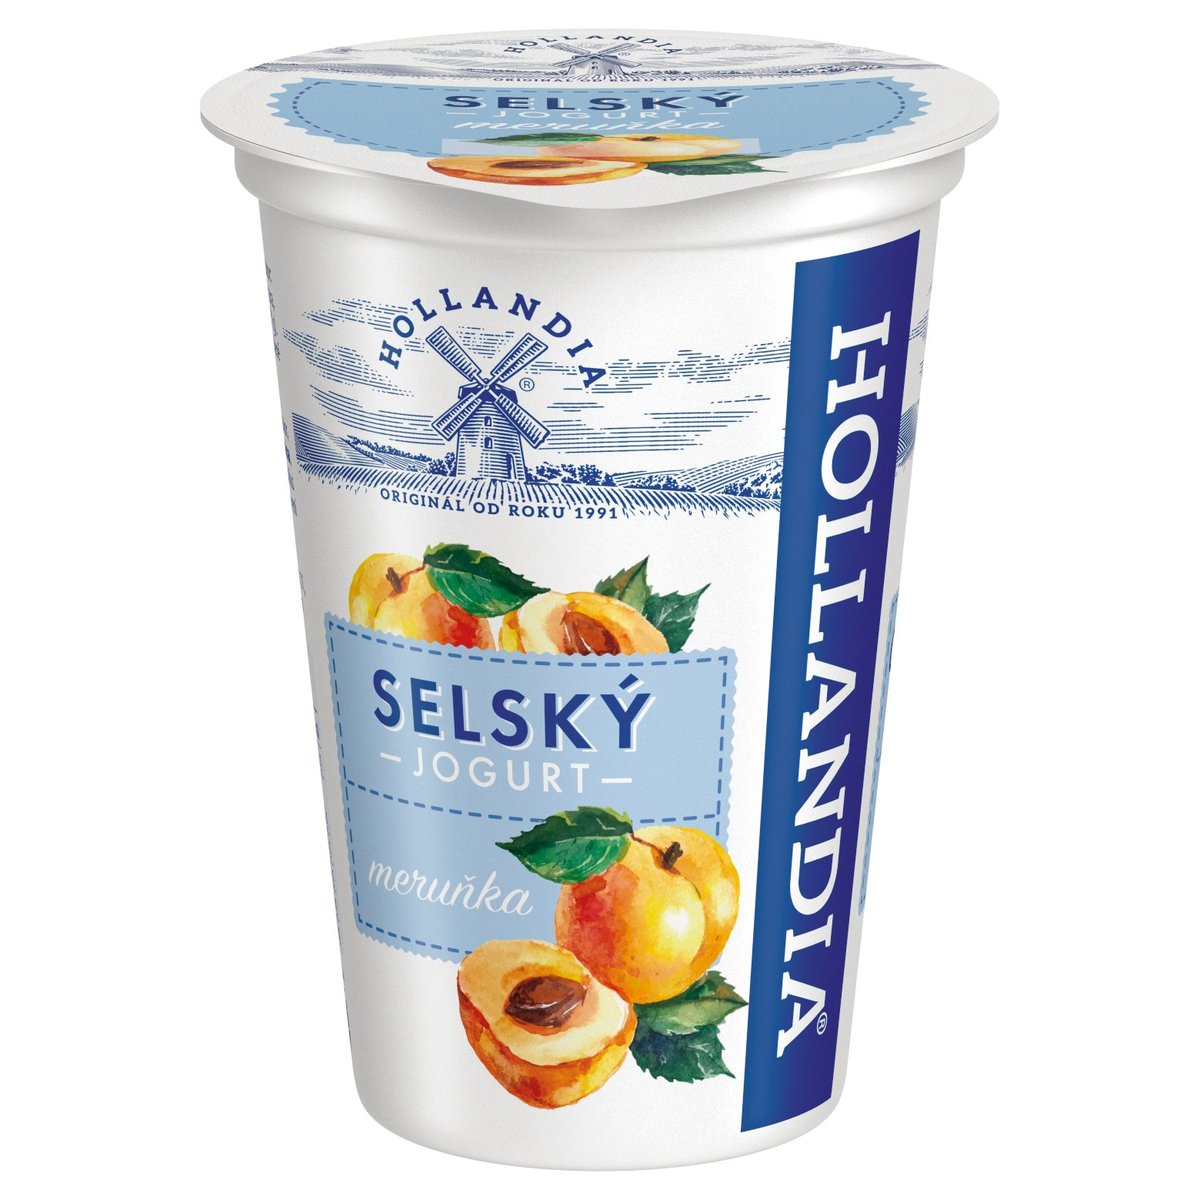 Hollandia Selský jogurt meruňkový